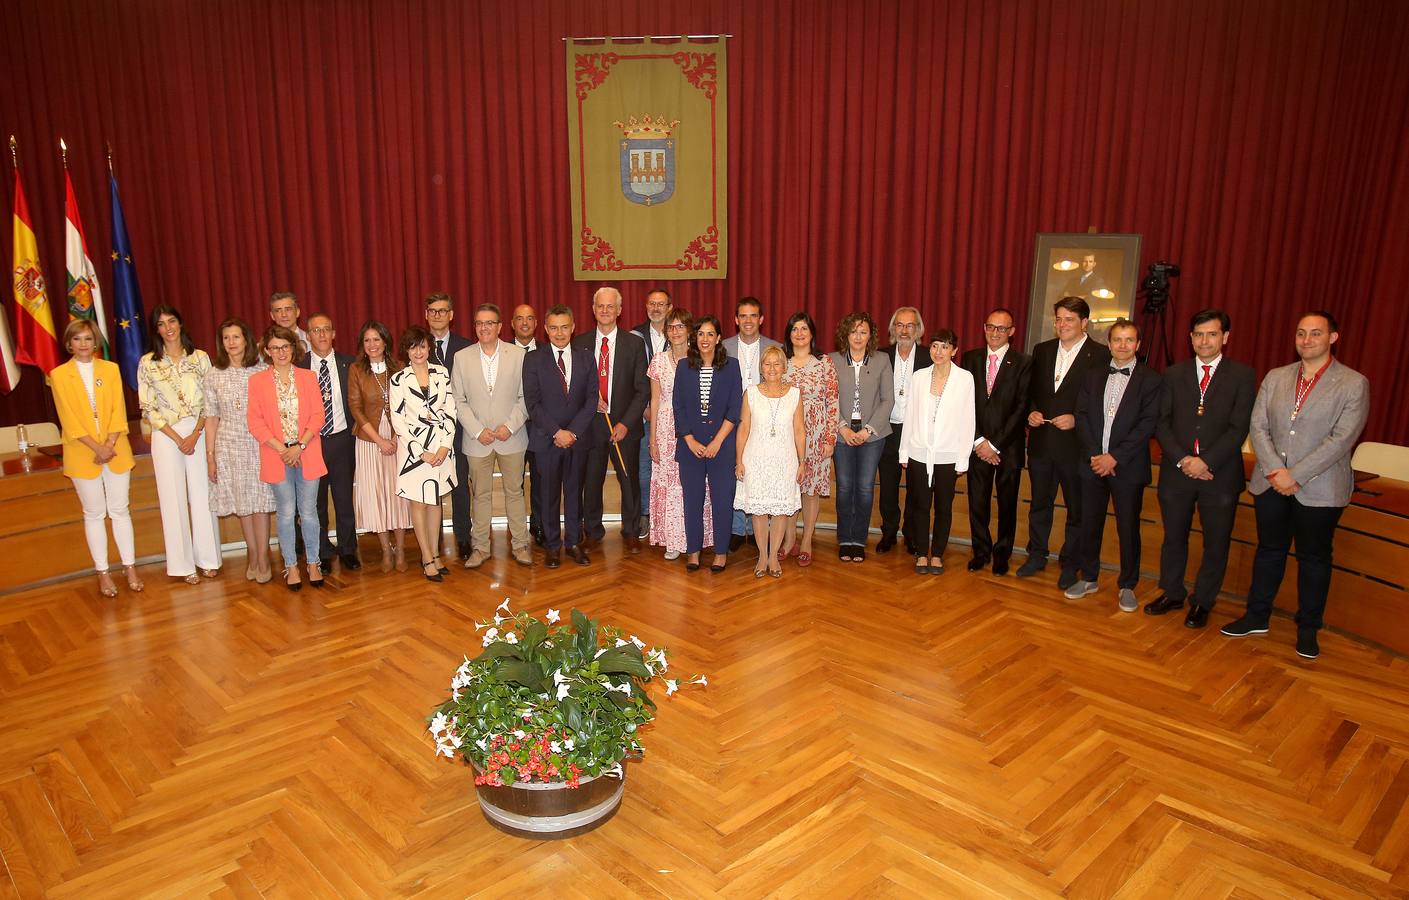 Fotos: Hermoso de Mendoza, nuevo alcalde de Logroño: el acto (1 de 3)